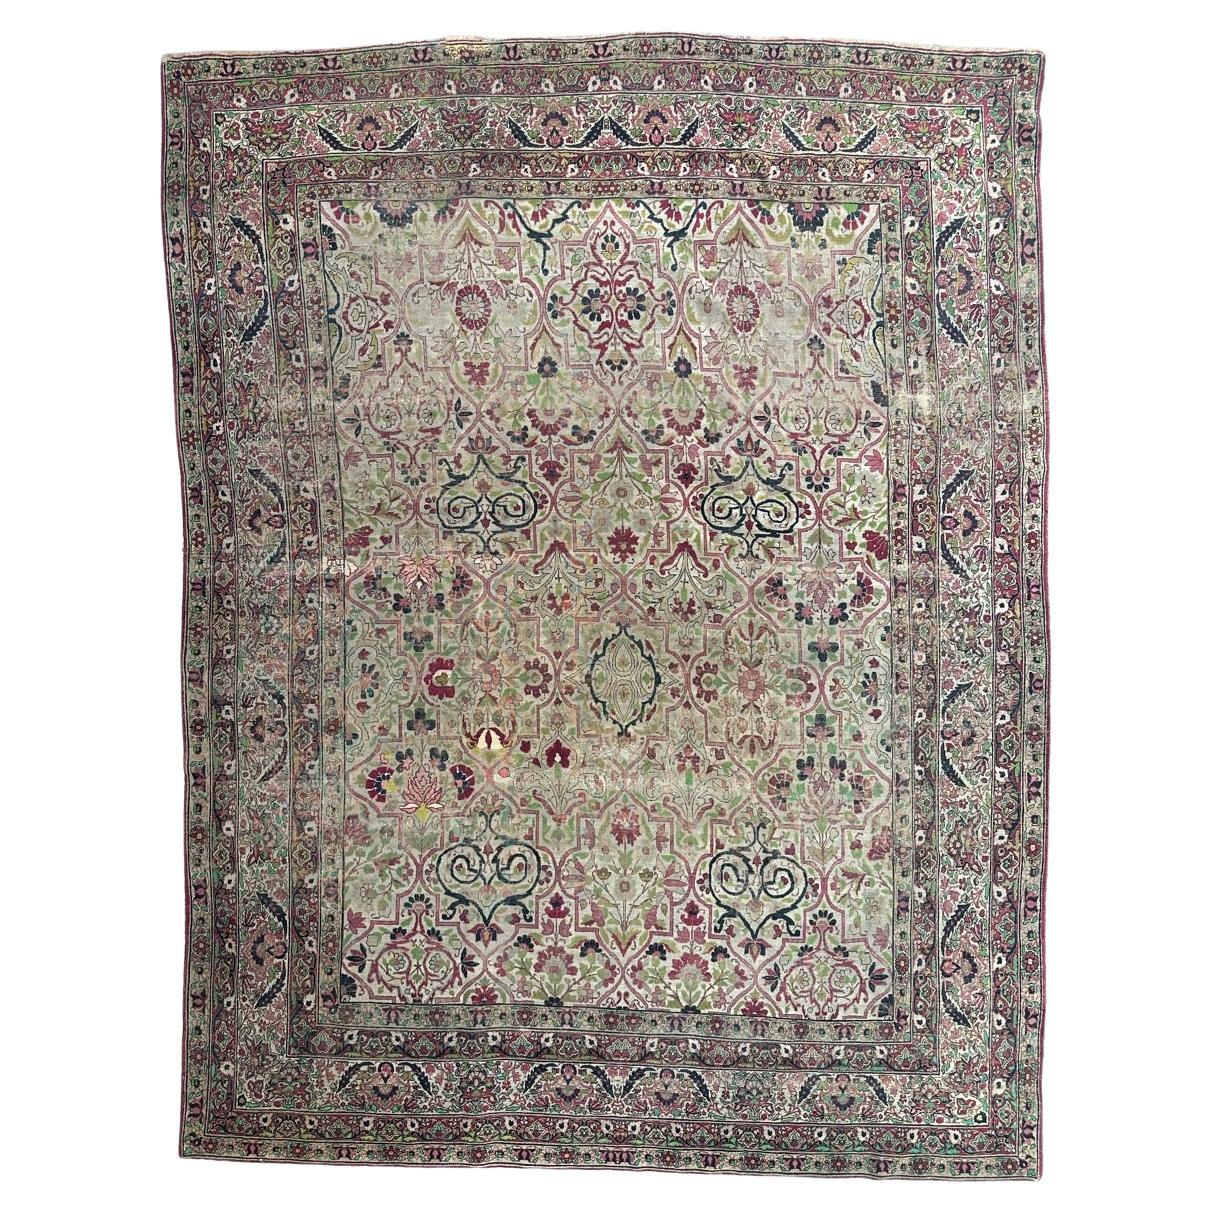 Bobyrug’s Nice large antique fine Kirman rug  For Sale